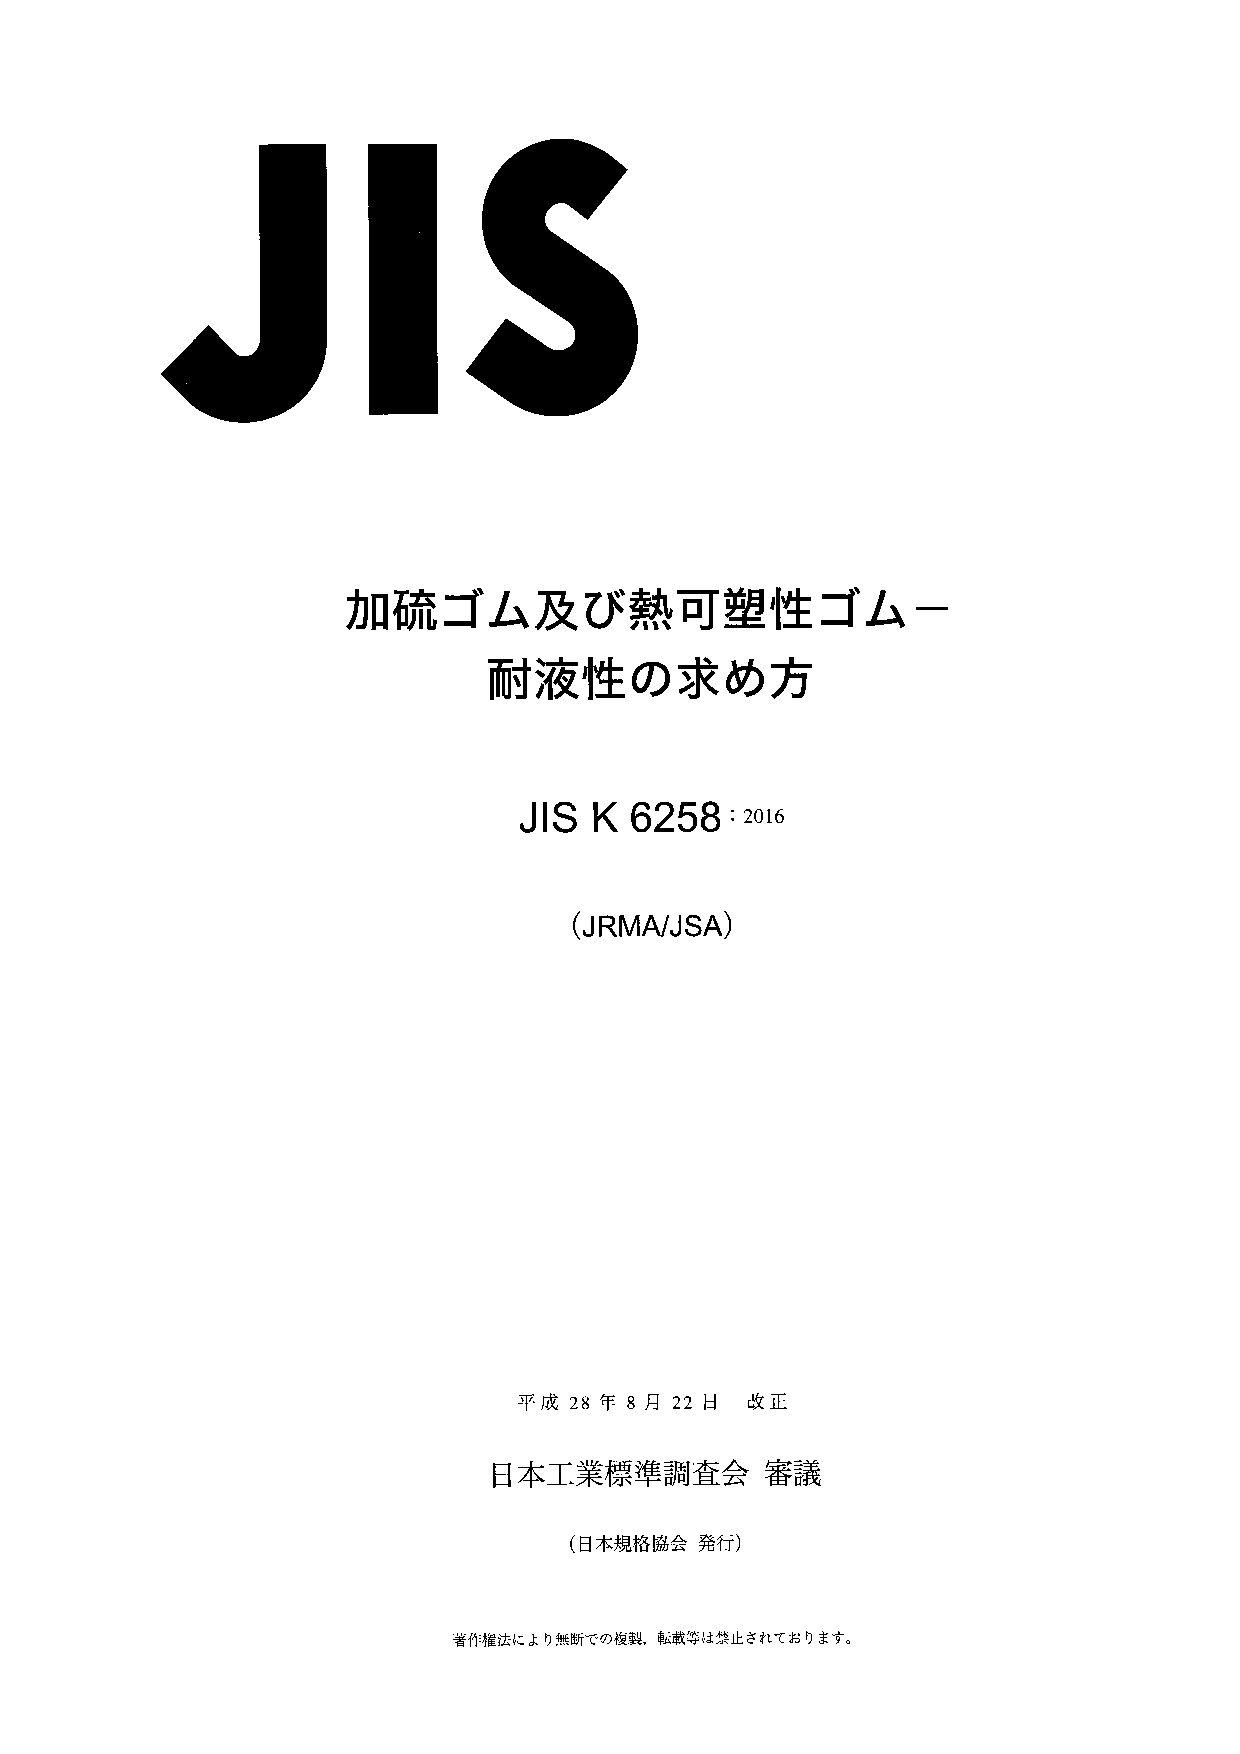 JIS K 6258:2016